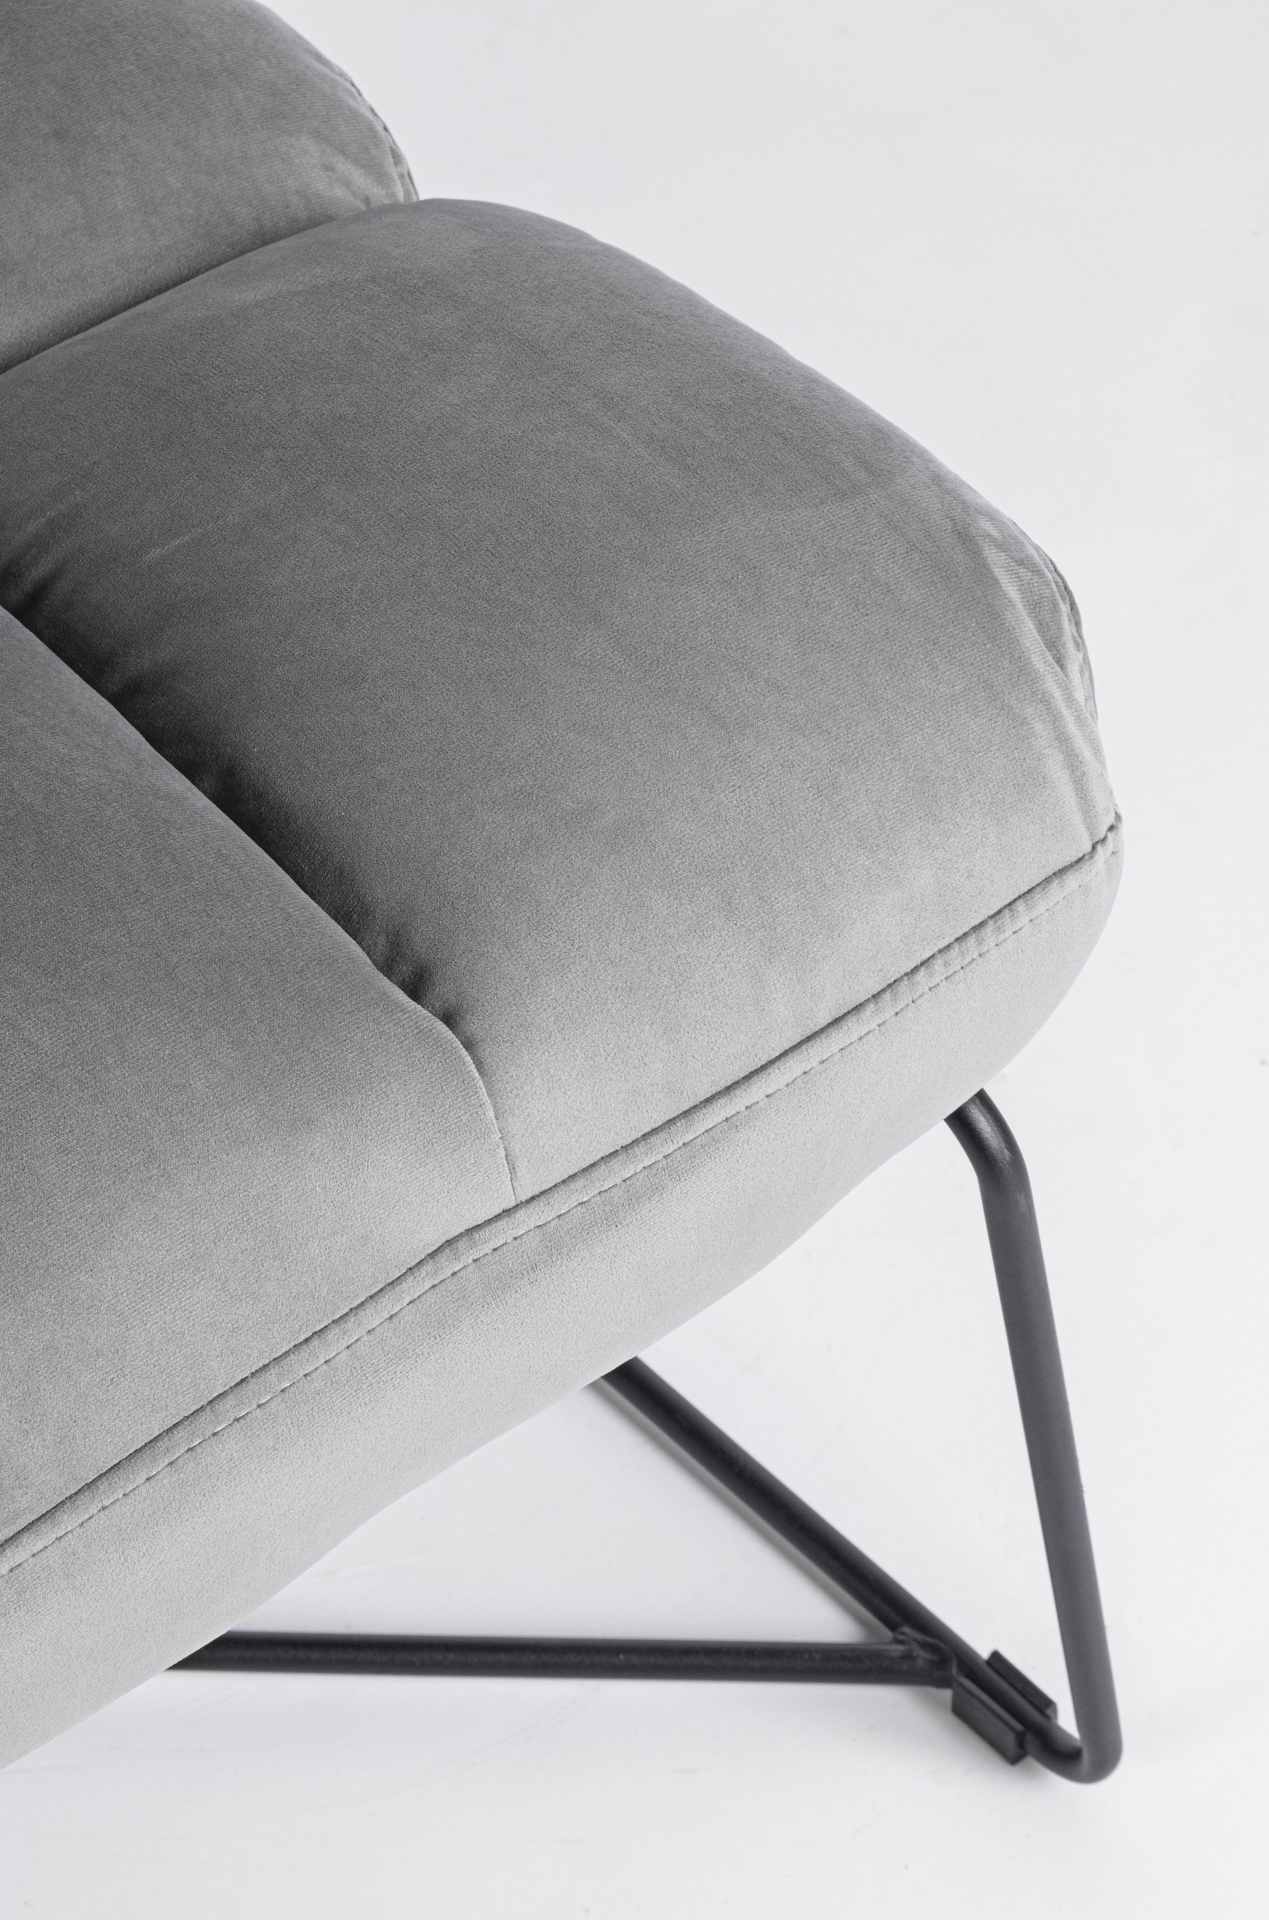 Der Sessel Lizzie überzeugt mit seinem modernen Design. Gefertigt wurde er aus Samt, welcher einen grauen Farbton besitzt. Das Gestell ist aus Metall und hat eine schwarze Farbe. Der Sessel besitzt eine Sitzhöhe von 47 cm. Die Breite beträgt 61 cm.